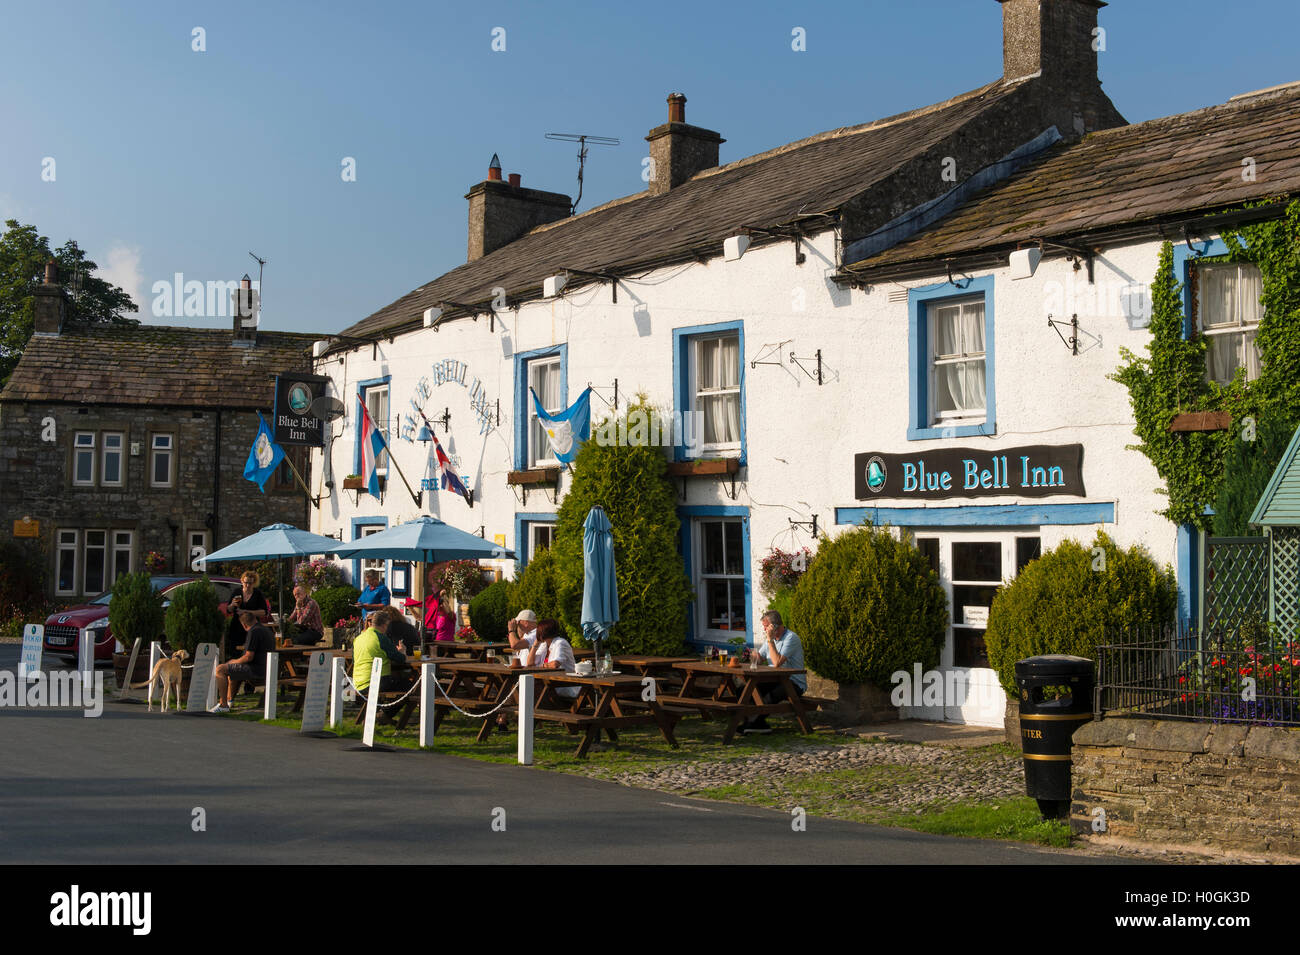 Les gens manger & boire en plein air dans le soleil à l'attrayant, pub anglais traditionnel - The Blue Bell Inn, Kettlewell, village du Yorkshire, England, UK. Banque D'Images